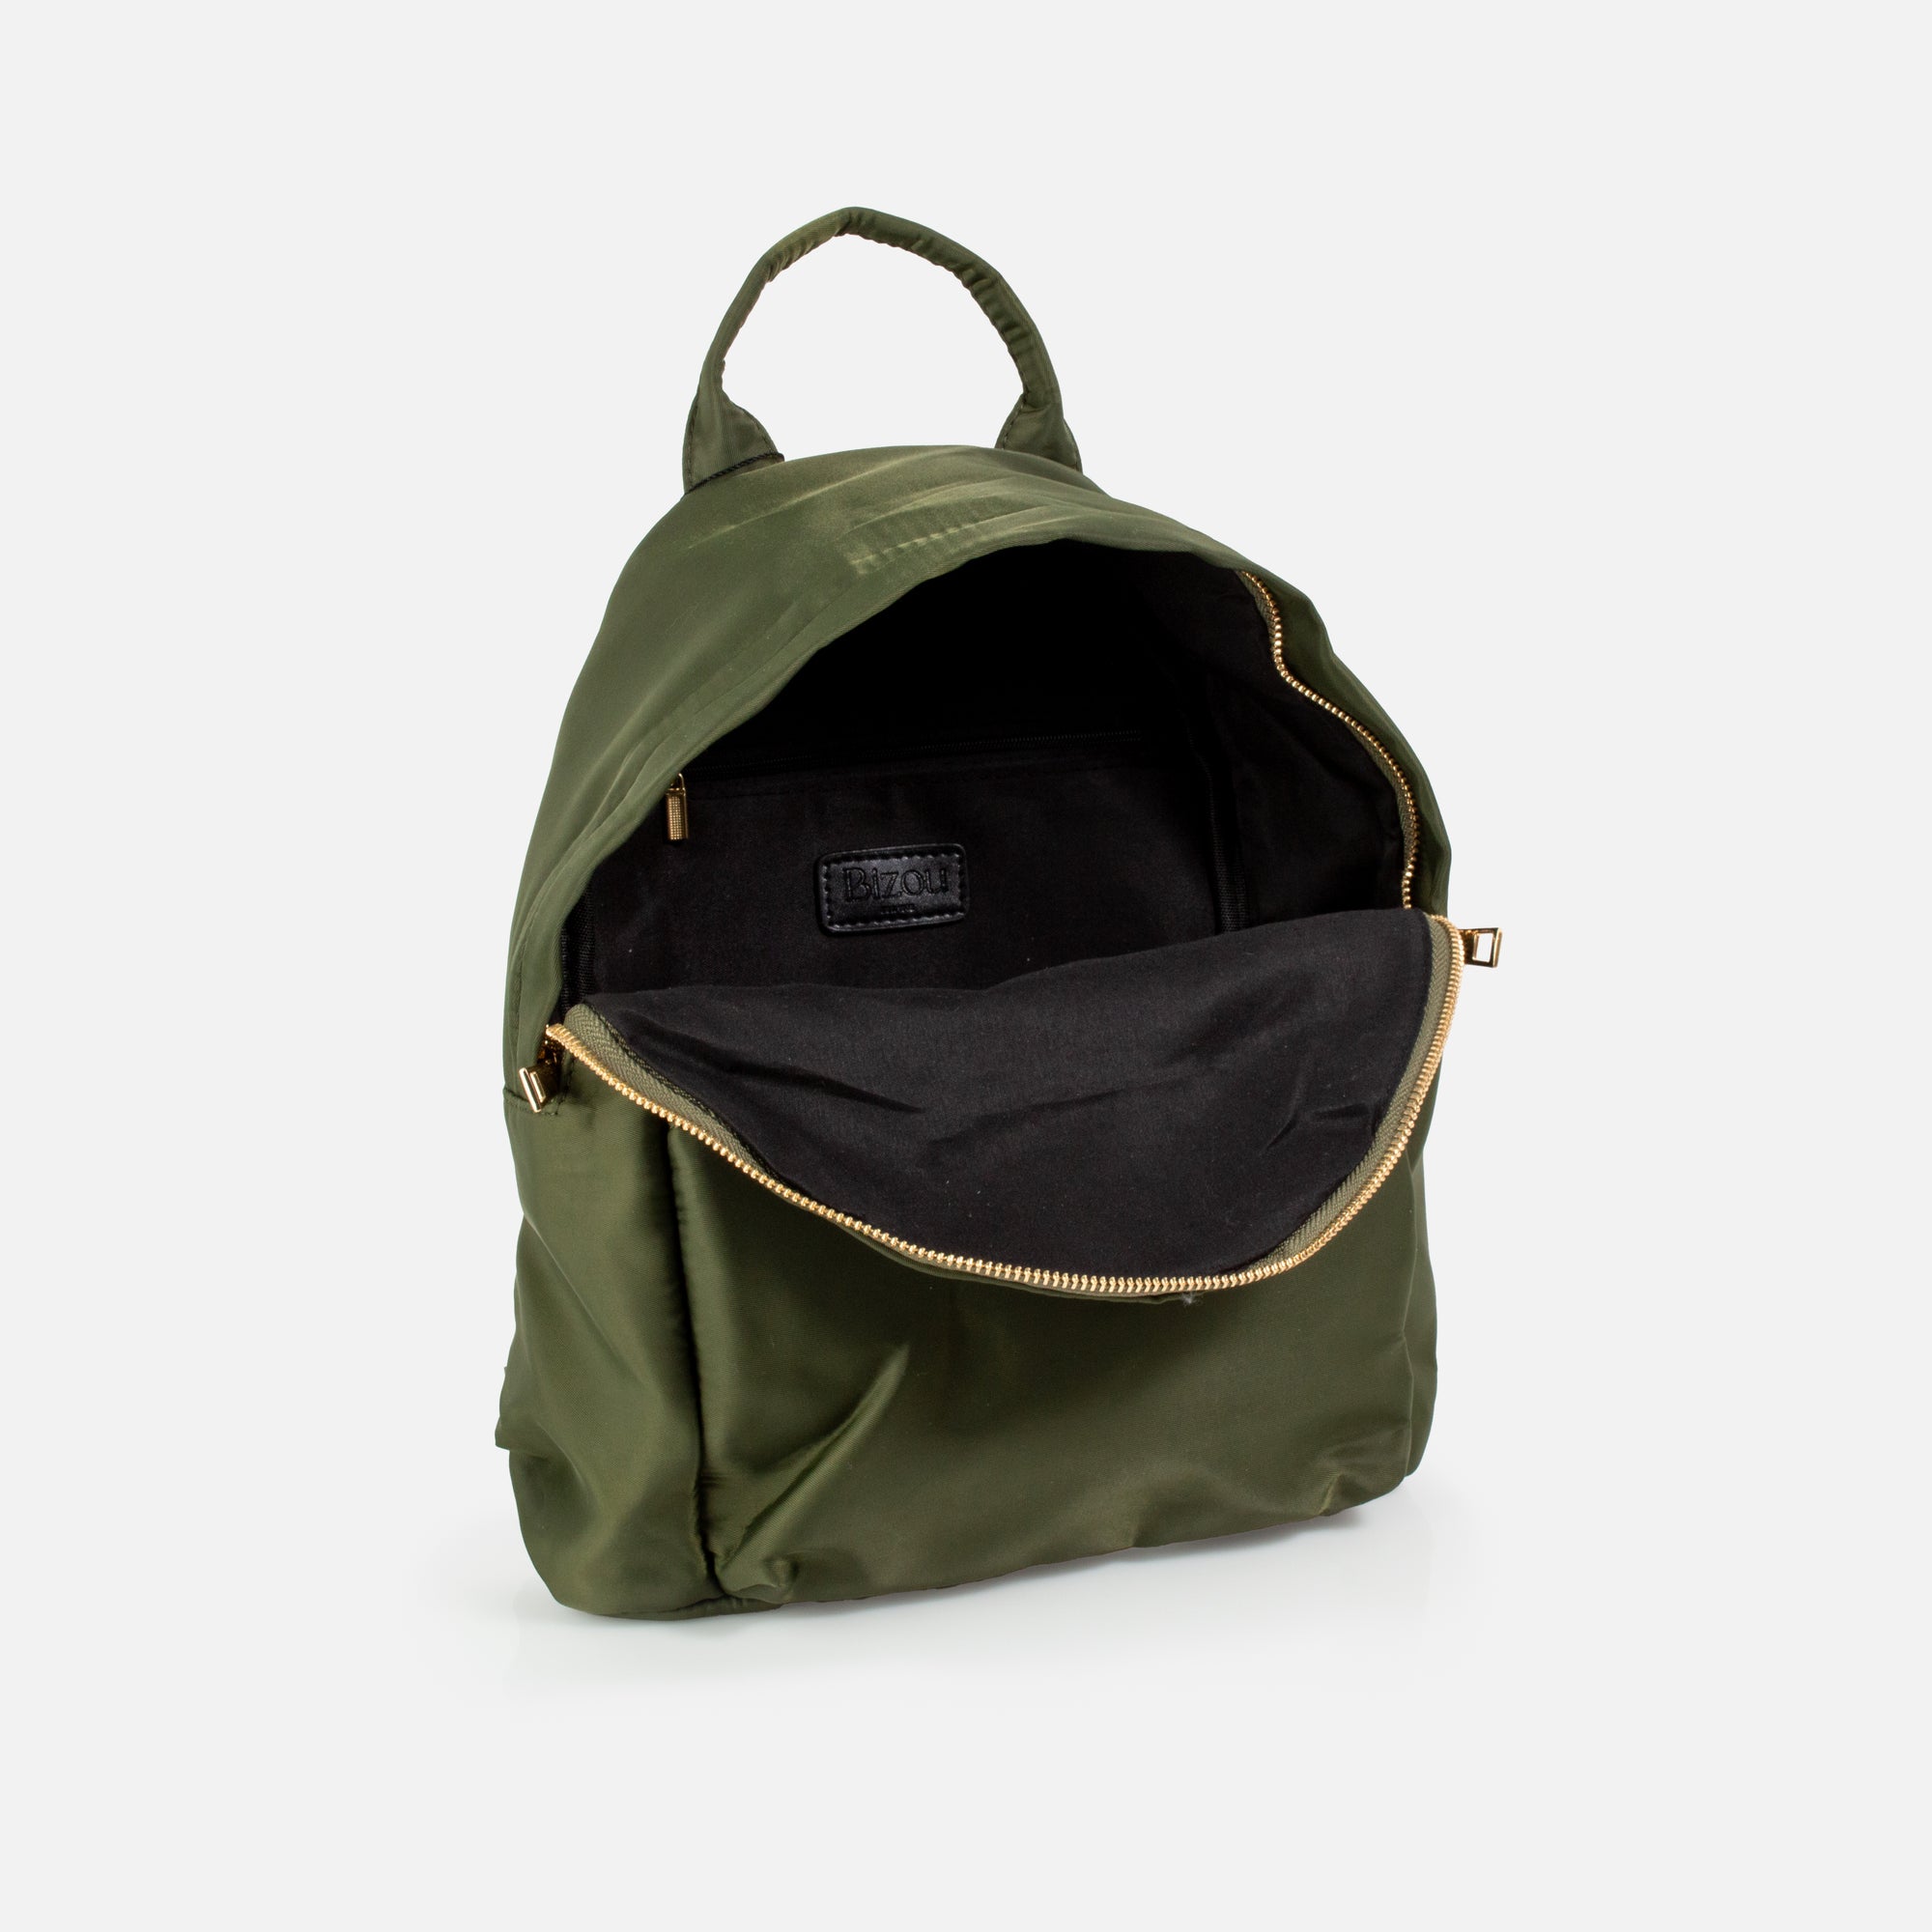 Khaki green backpack